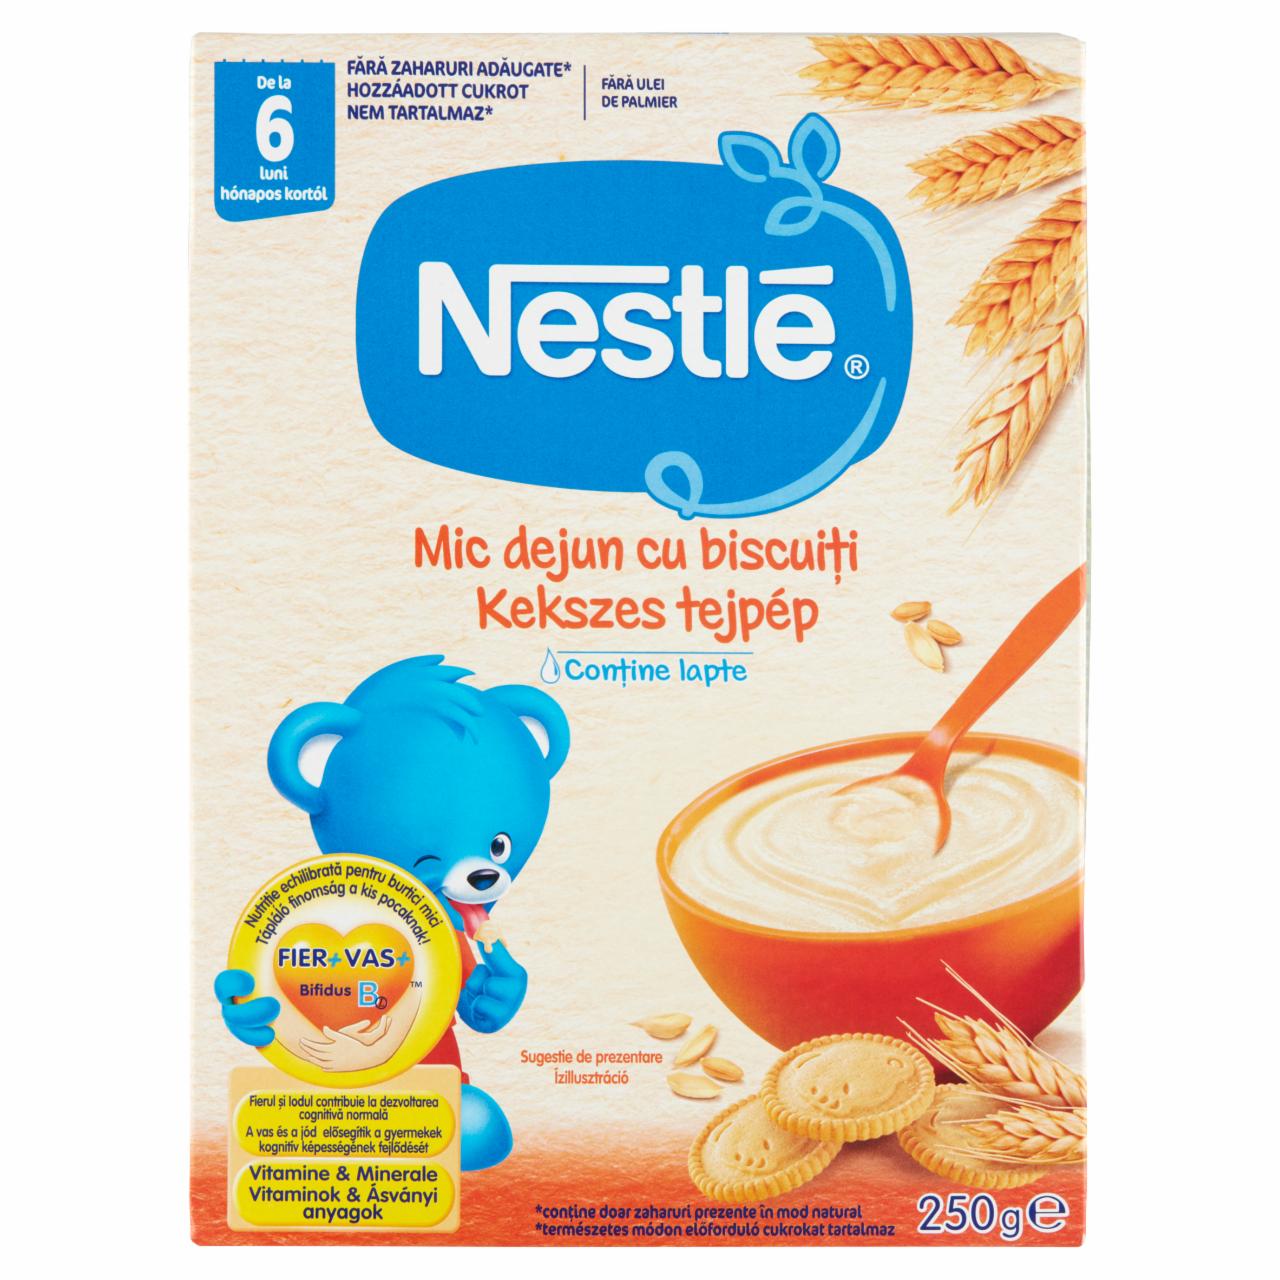 Képek - Nestlé kekszes tejpép 6 hónapos kortól 250 g